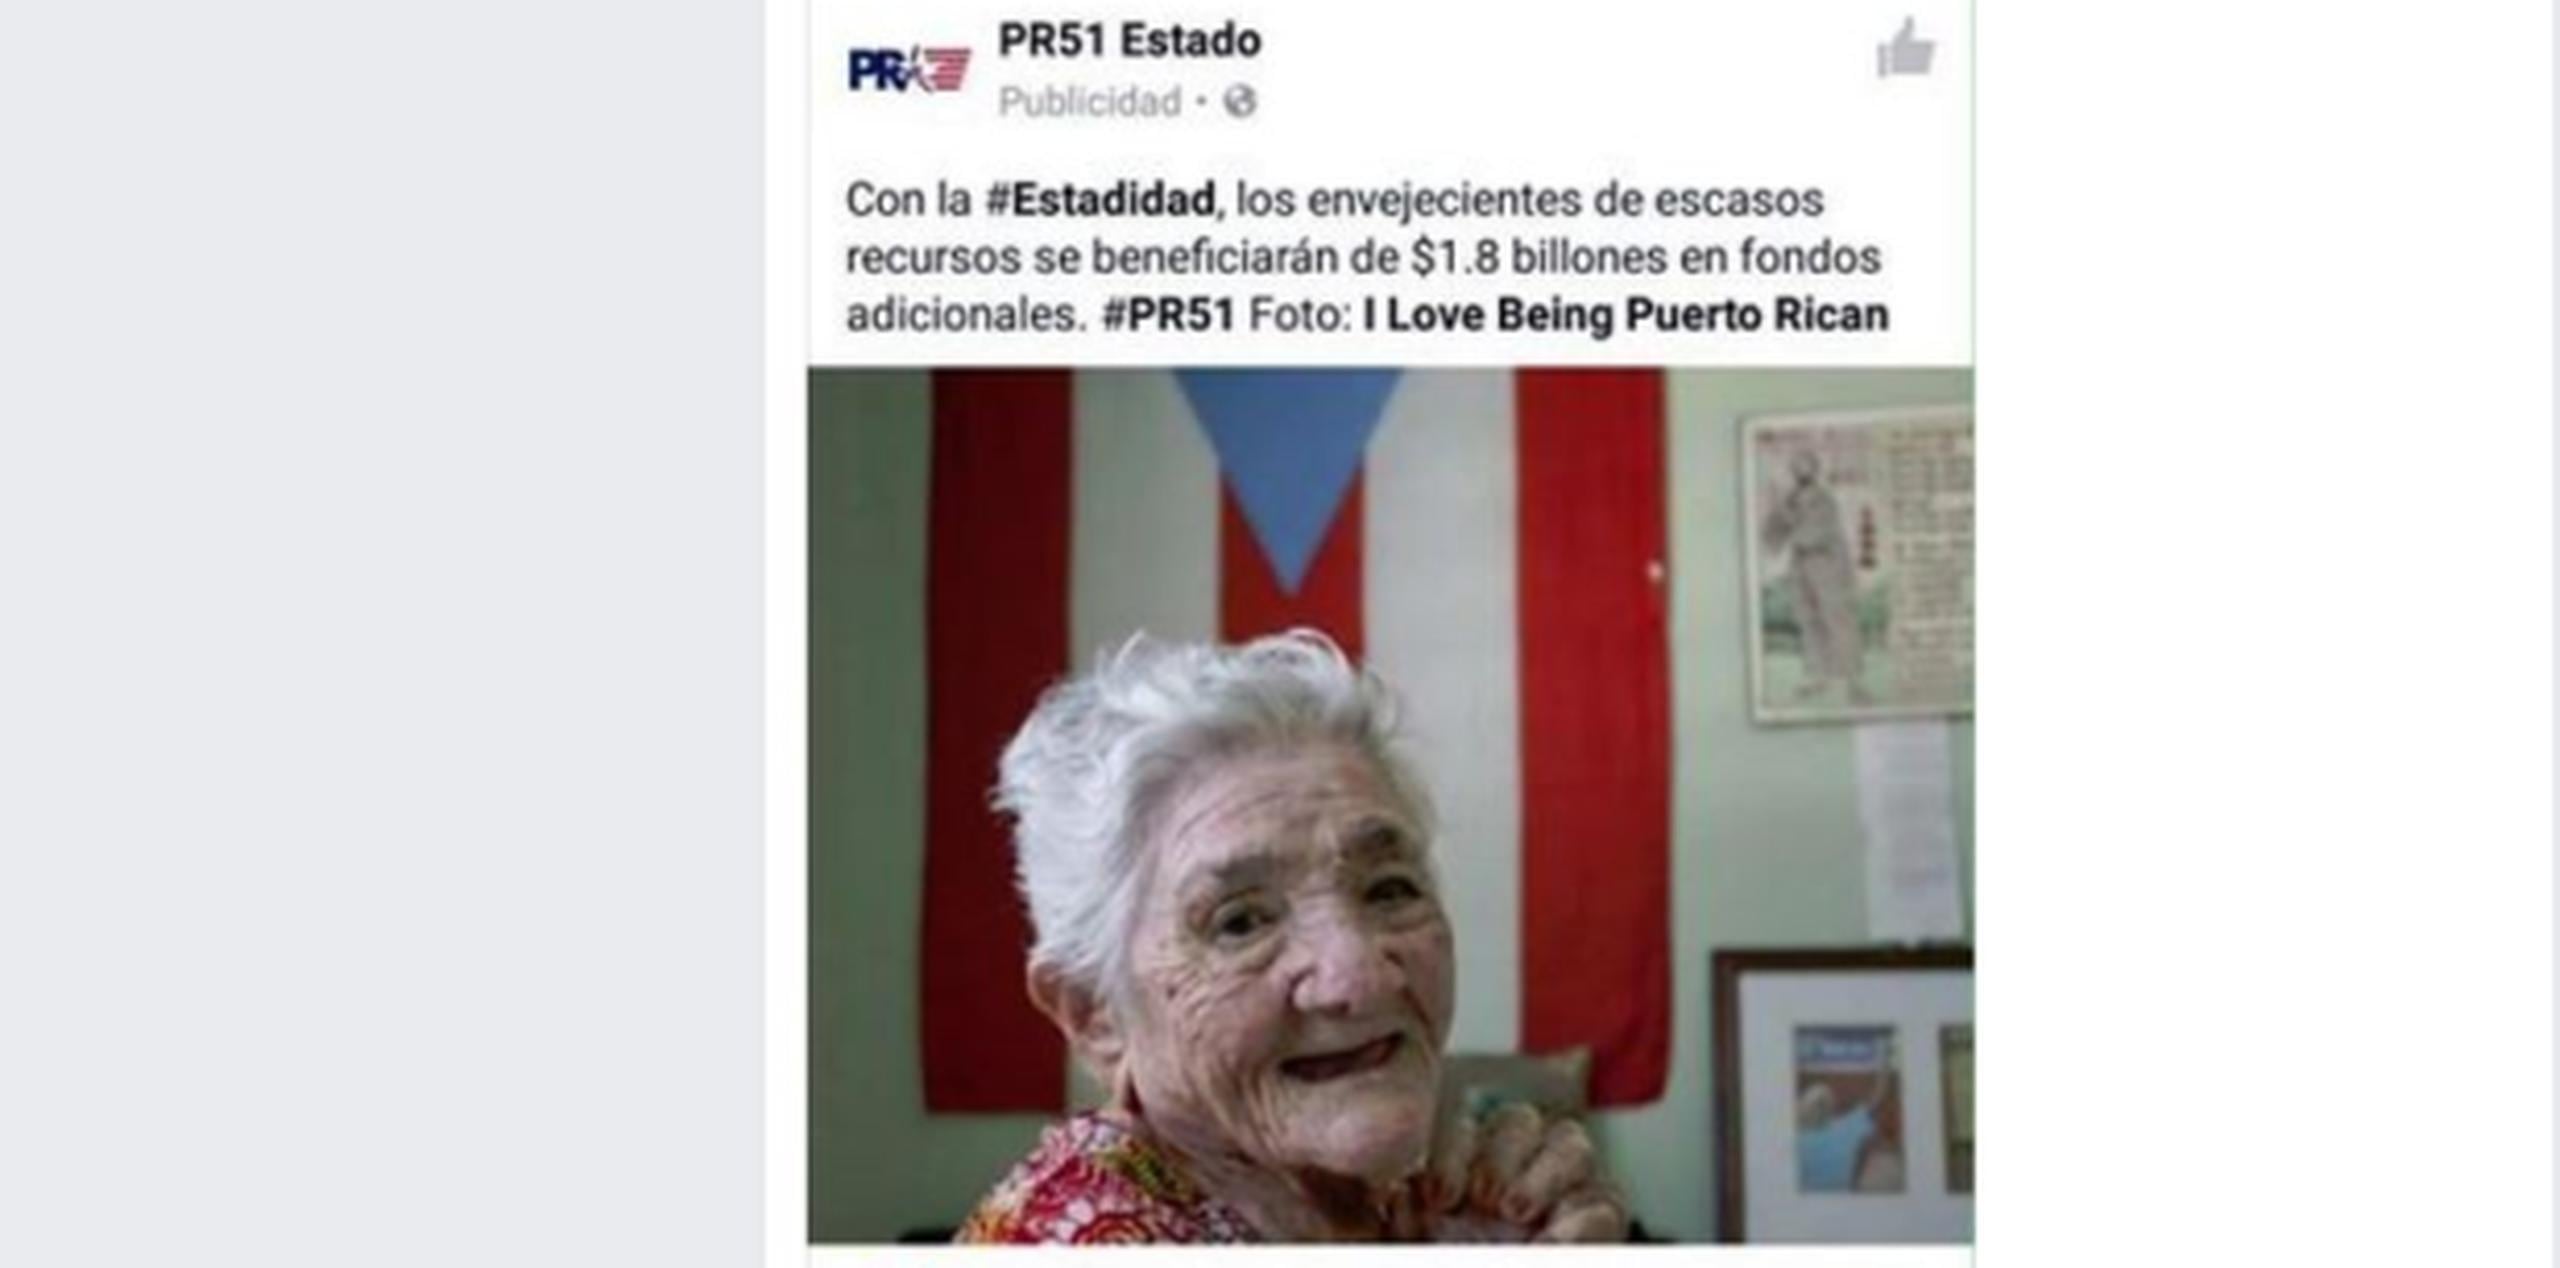 El portal estdista PR51 Estado usó la imagen de la luchadora independentista Isabel Rosado para un anuncio pro estadidad. (Captura)